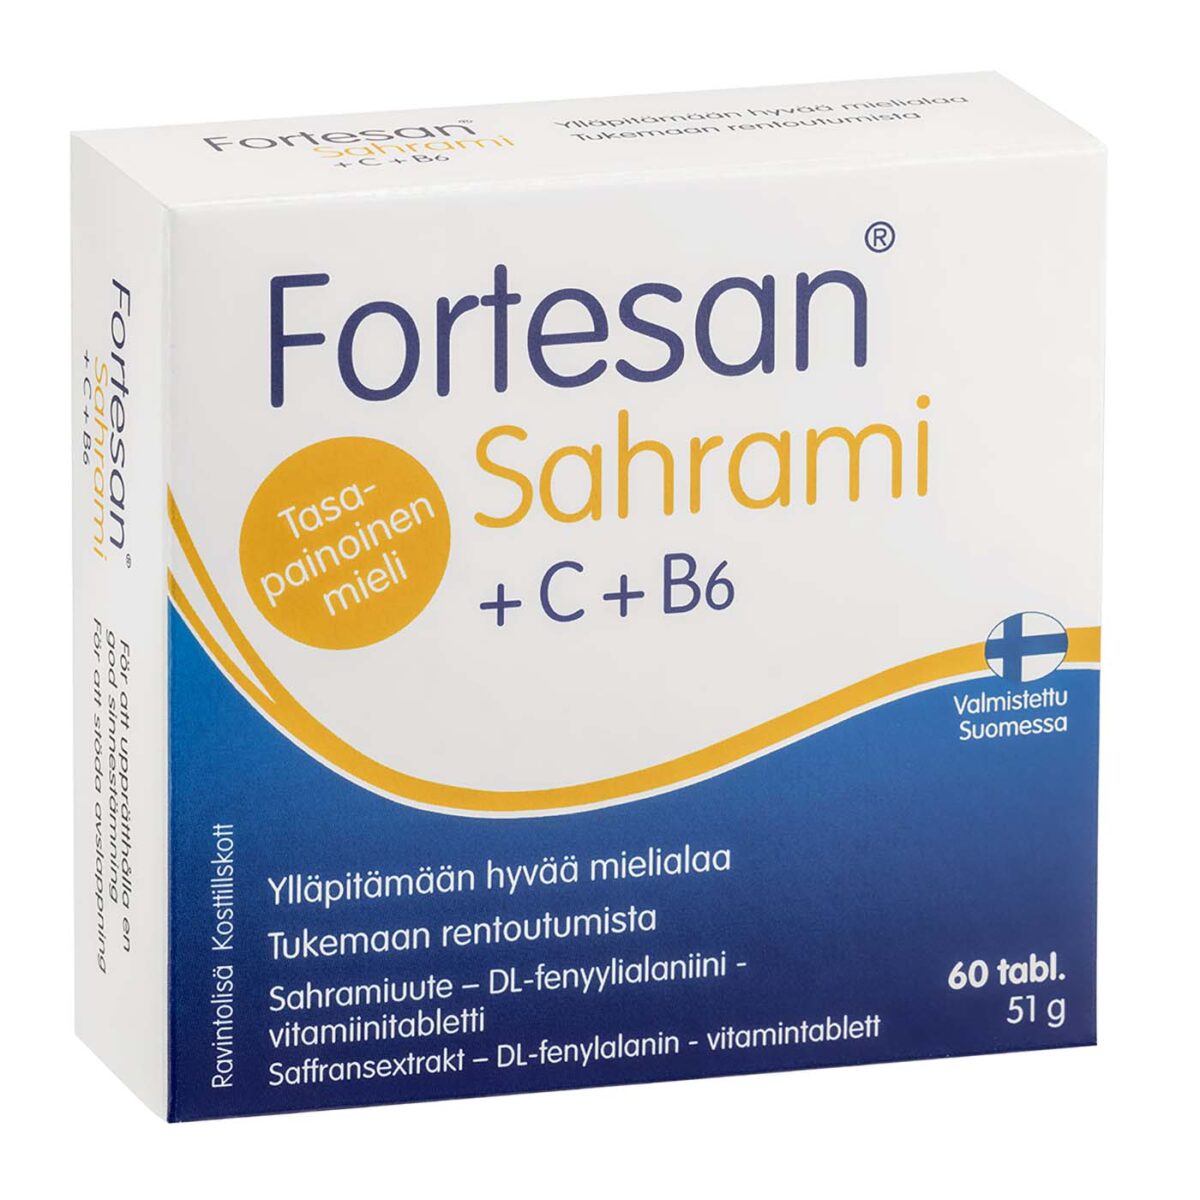 Fortesan Sahrami supplement